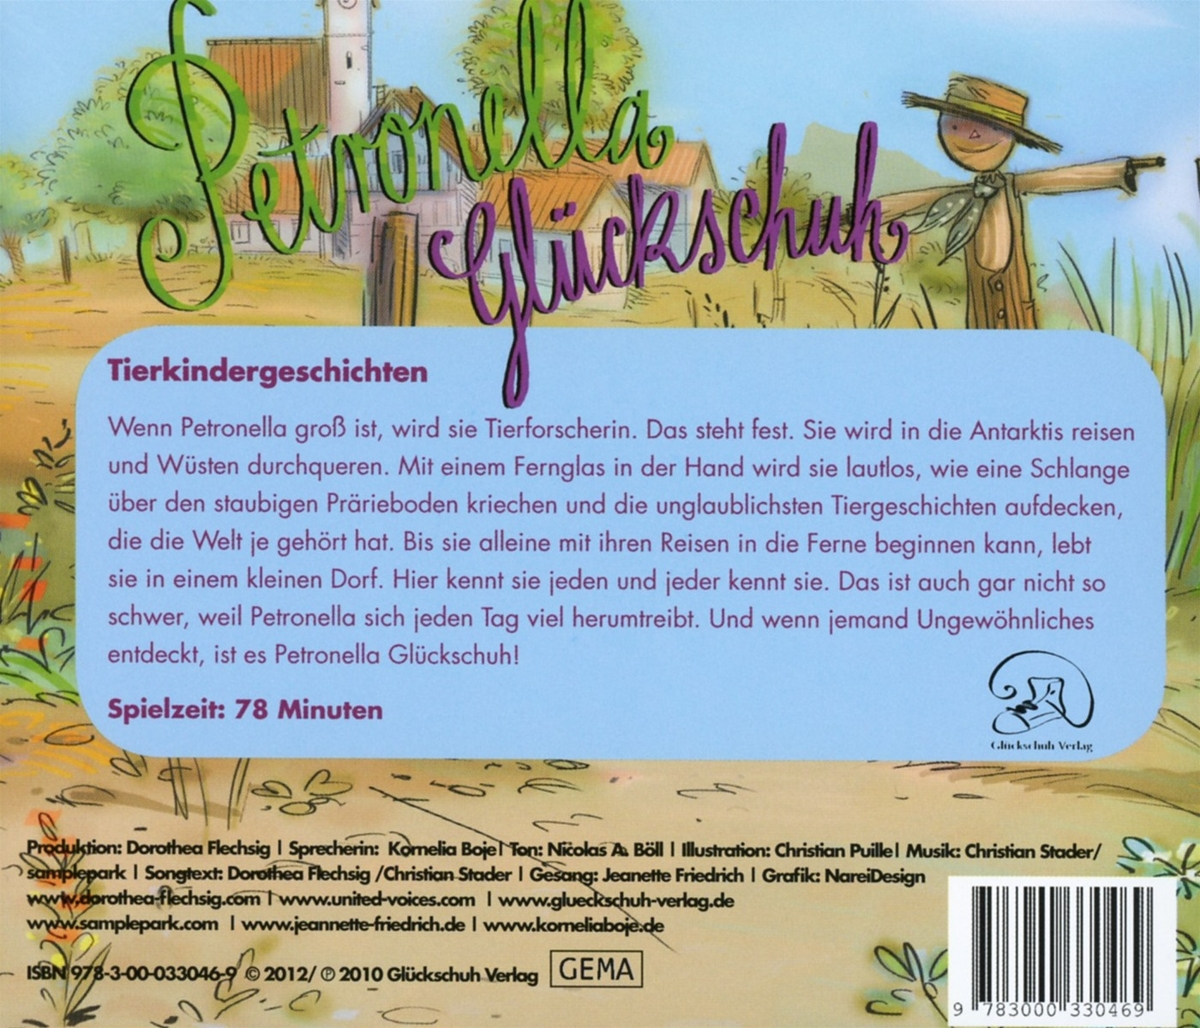 Petronella Gluckschuh: Dorothea (CD) Tierkindergeschichten - Flechsig -